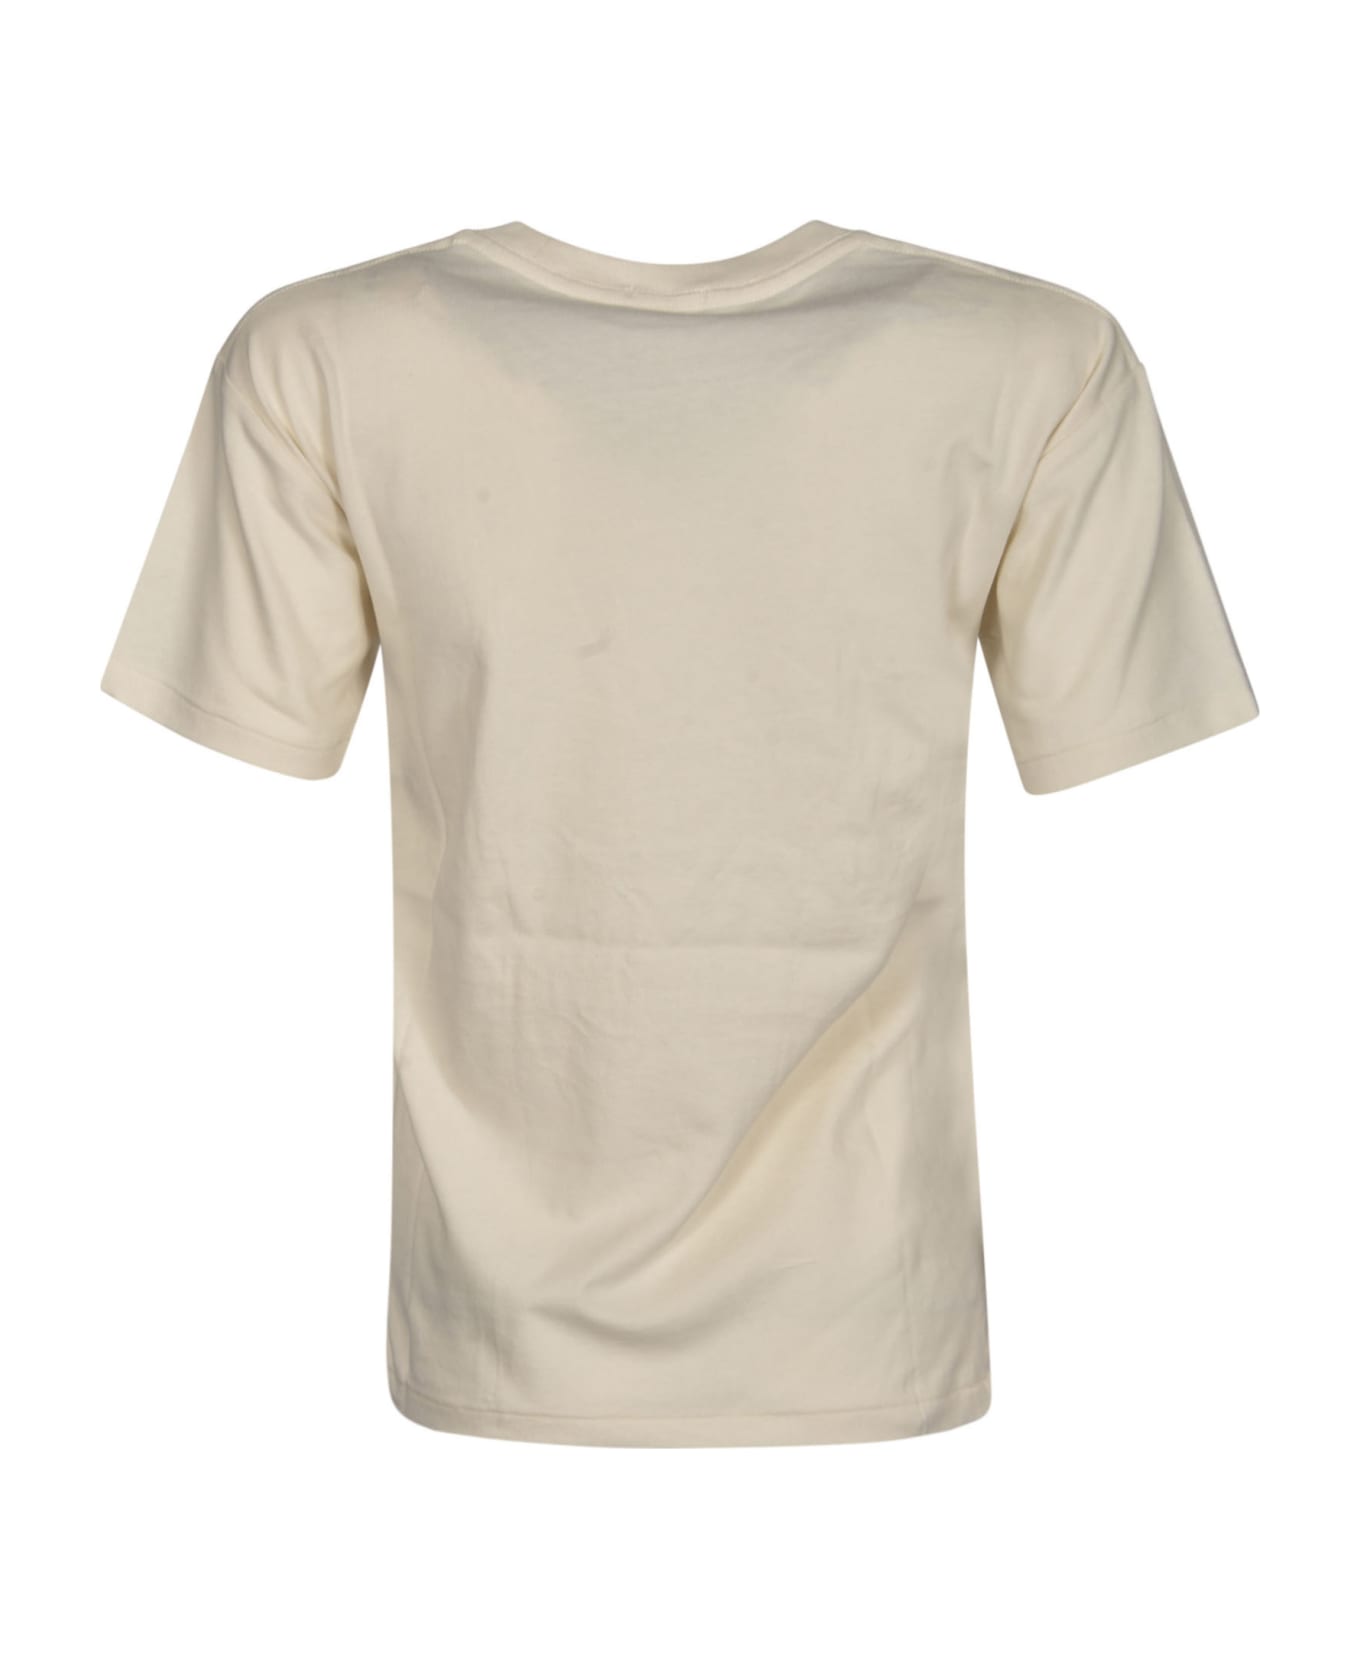 Polo Ralph Lauren Quality Goods T-shirt - Cream